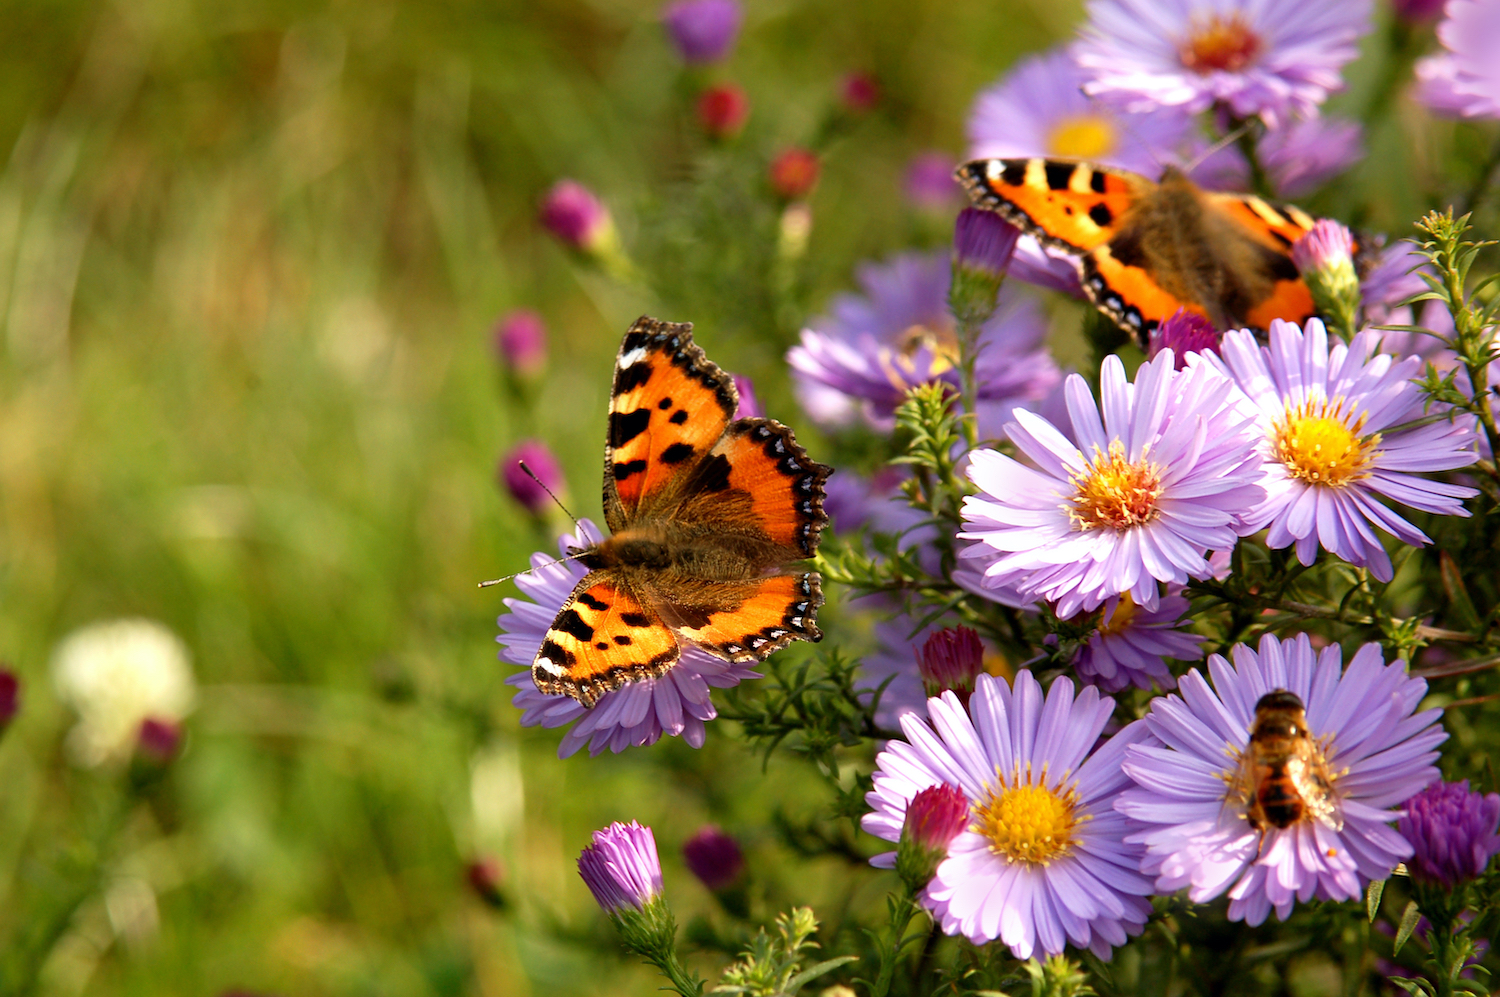 Motyle i pszczoły na kwiatach, fot. artjazz / Shutterstock.com